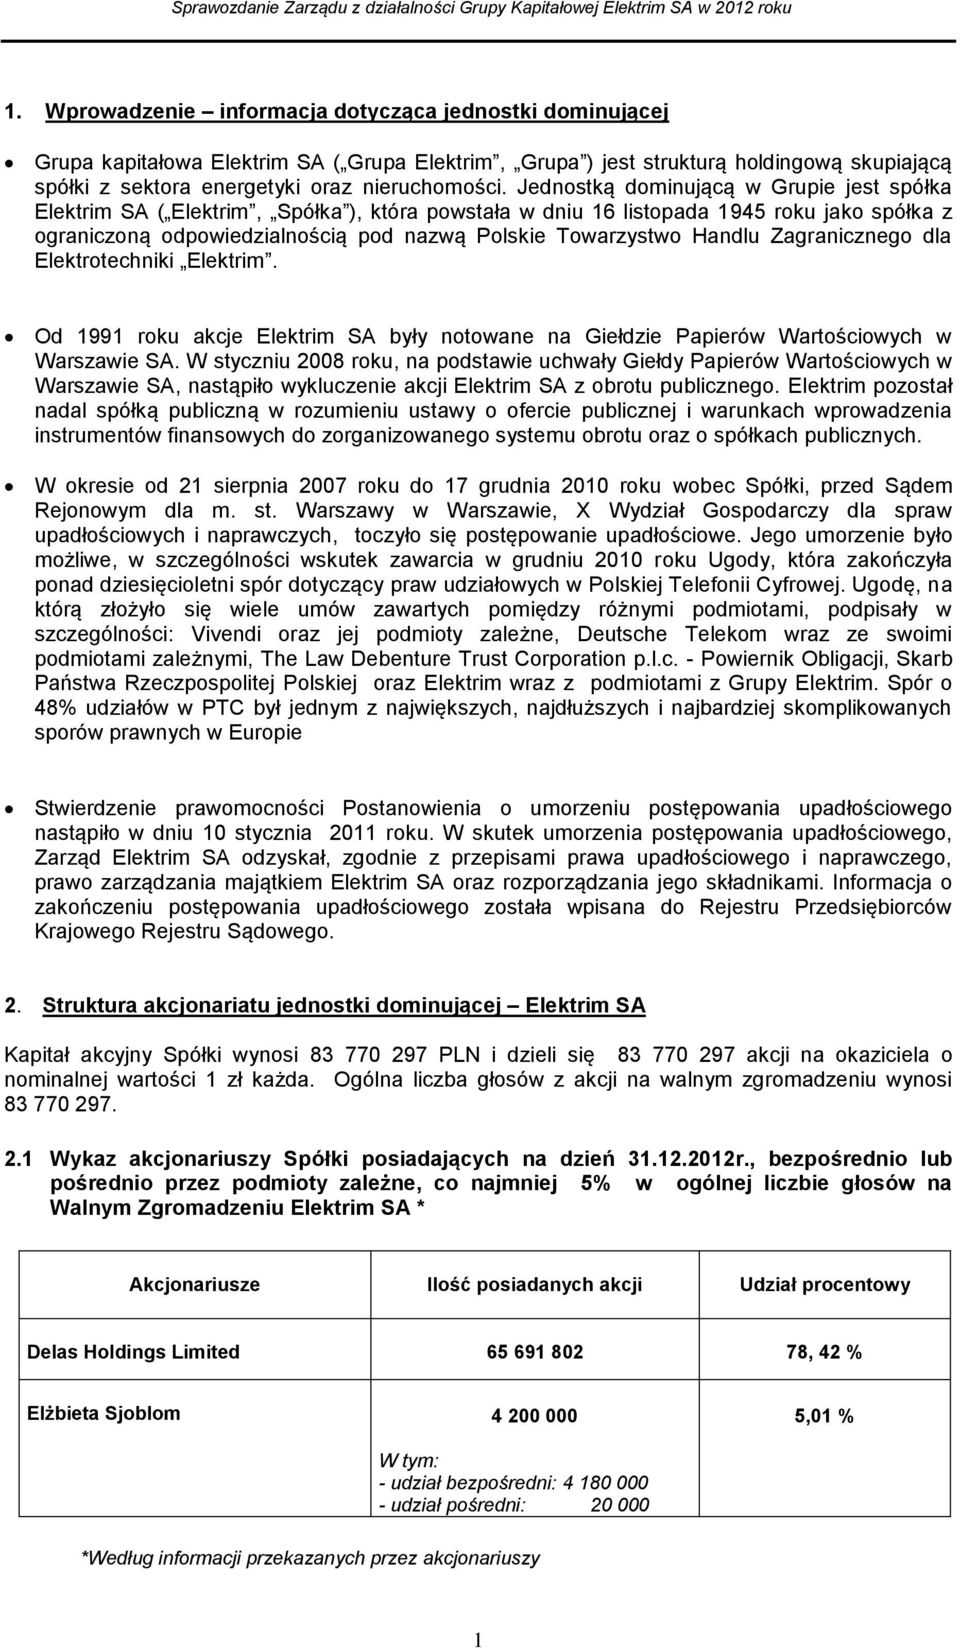 Handlu Zagranicznego dla Elektrotechniki Elektrim. Od 1991 roku akcje Elektrim SA były notowane na Giełdzie Papierów Wartościowych w Warszawie SA.